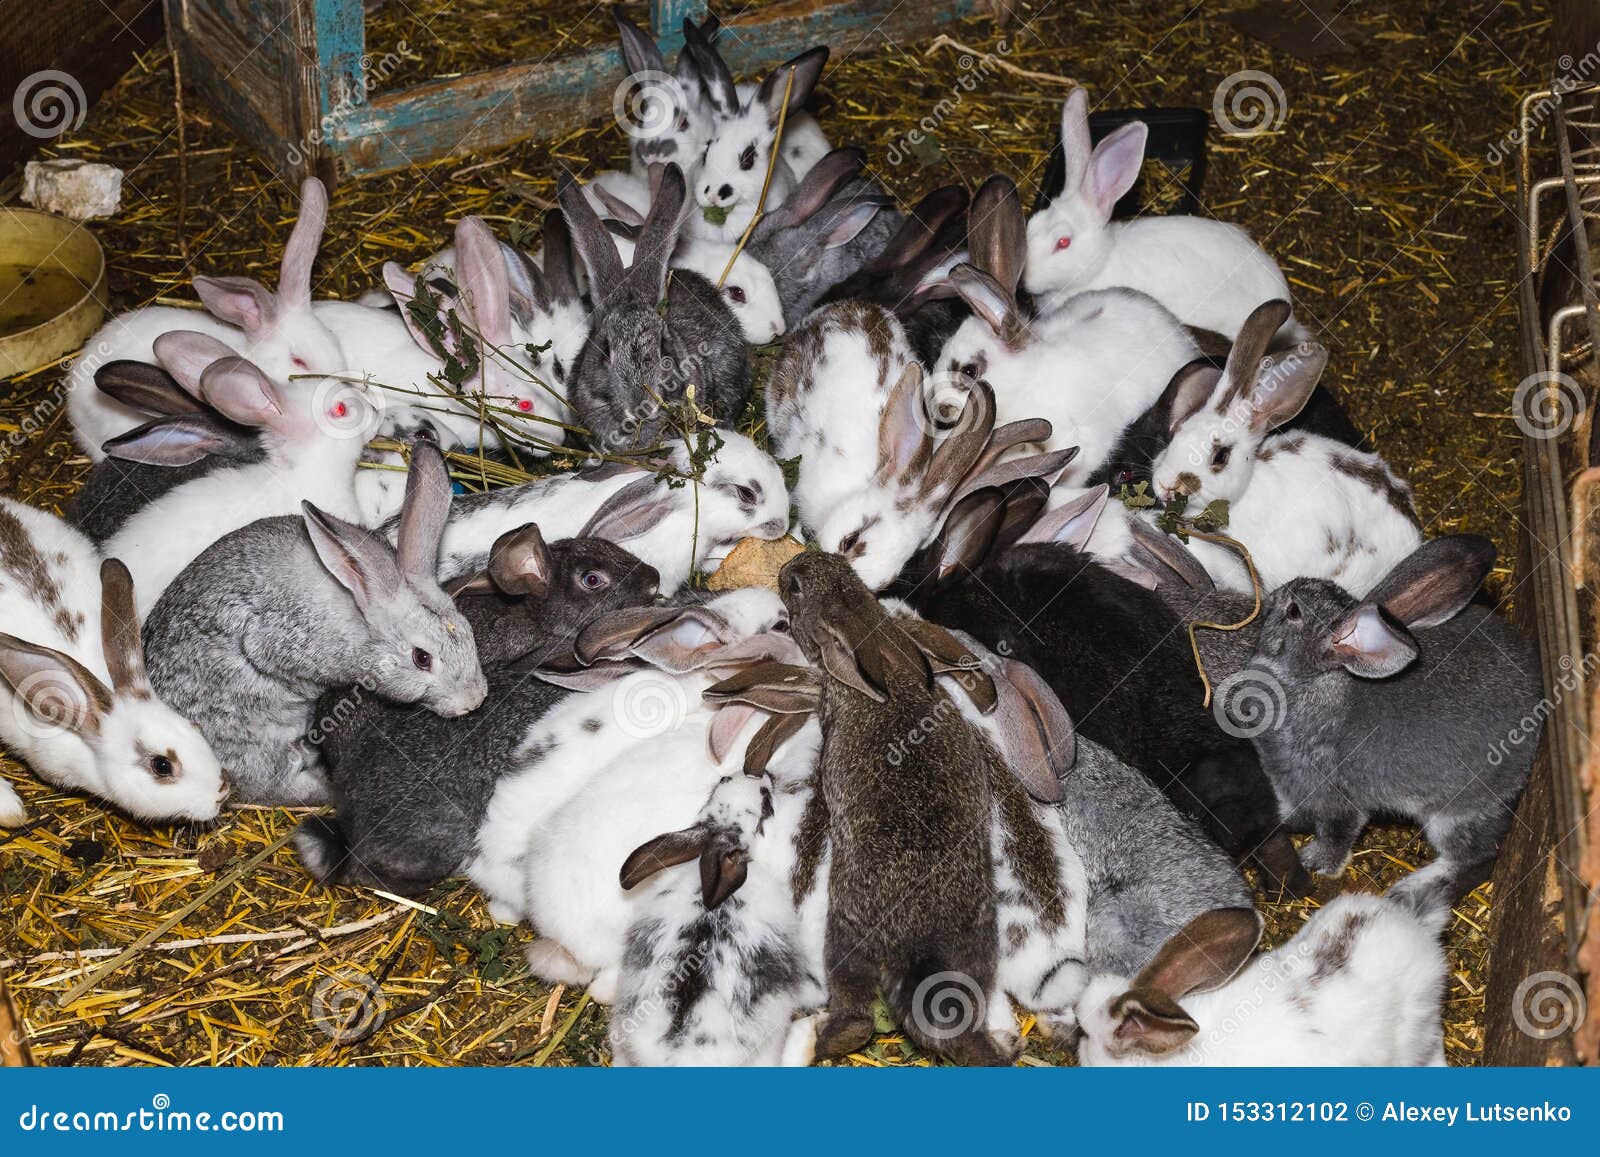 В питомнике живет несколько кроликов разного. Стайка для кроликов. Сарай для кроликов. Много кроликов. Кролики домашние в сарае.